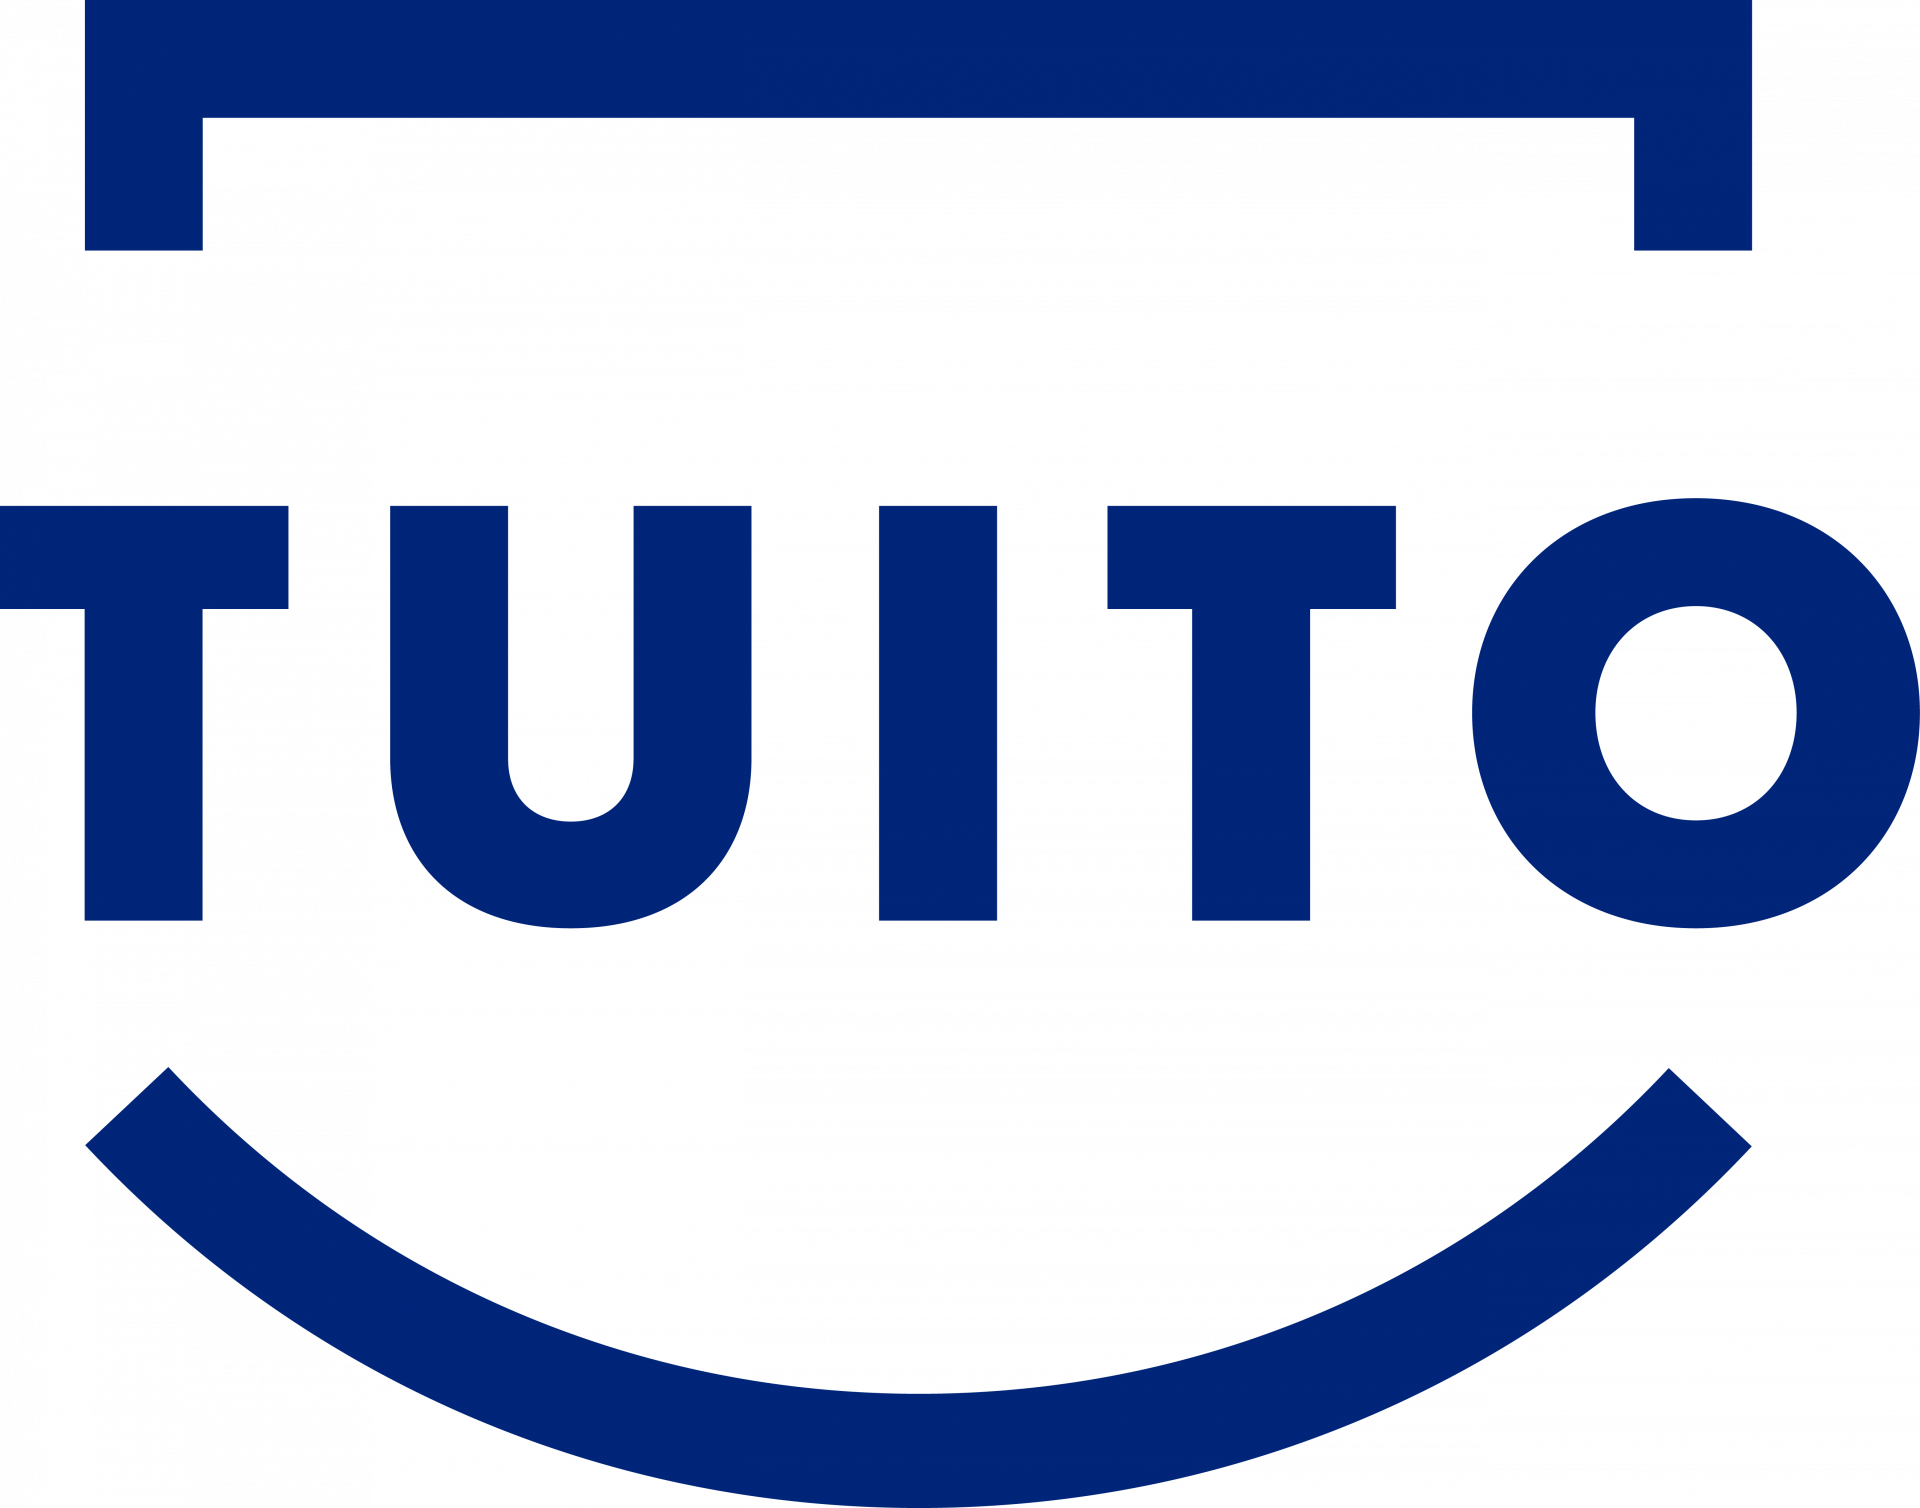 TUITO